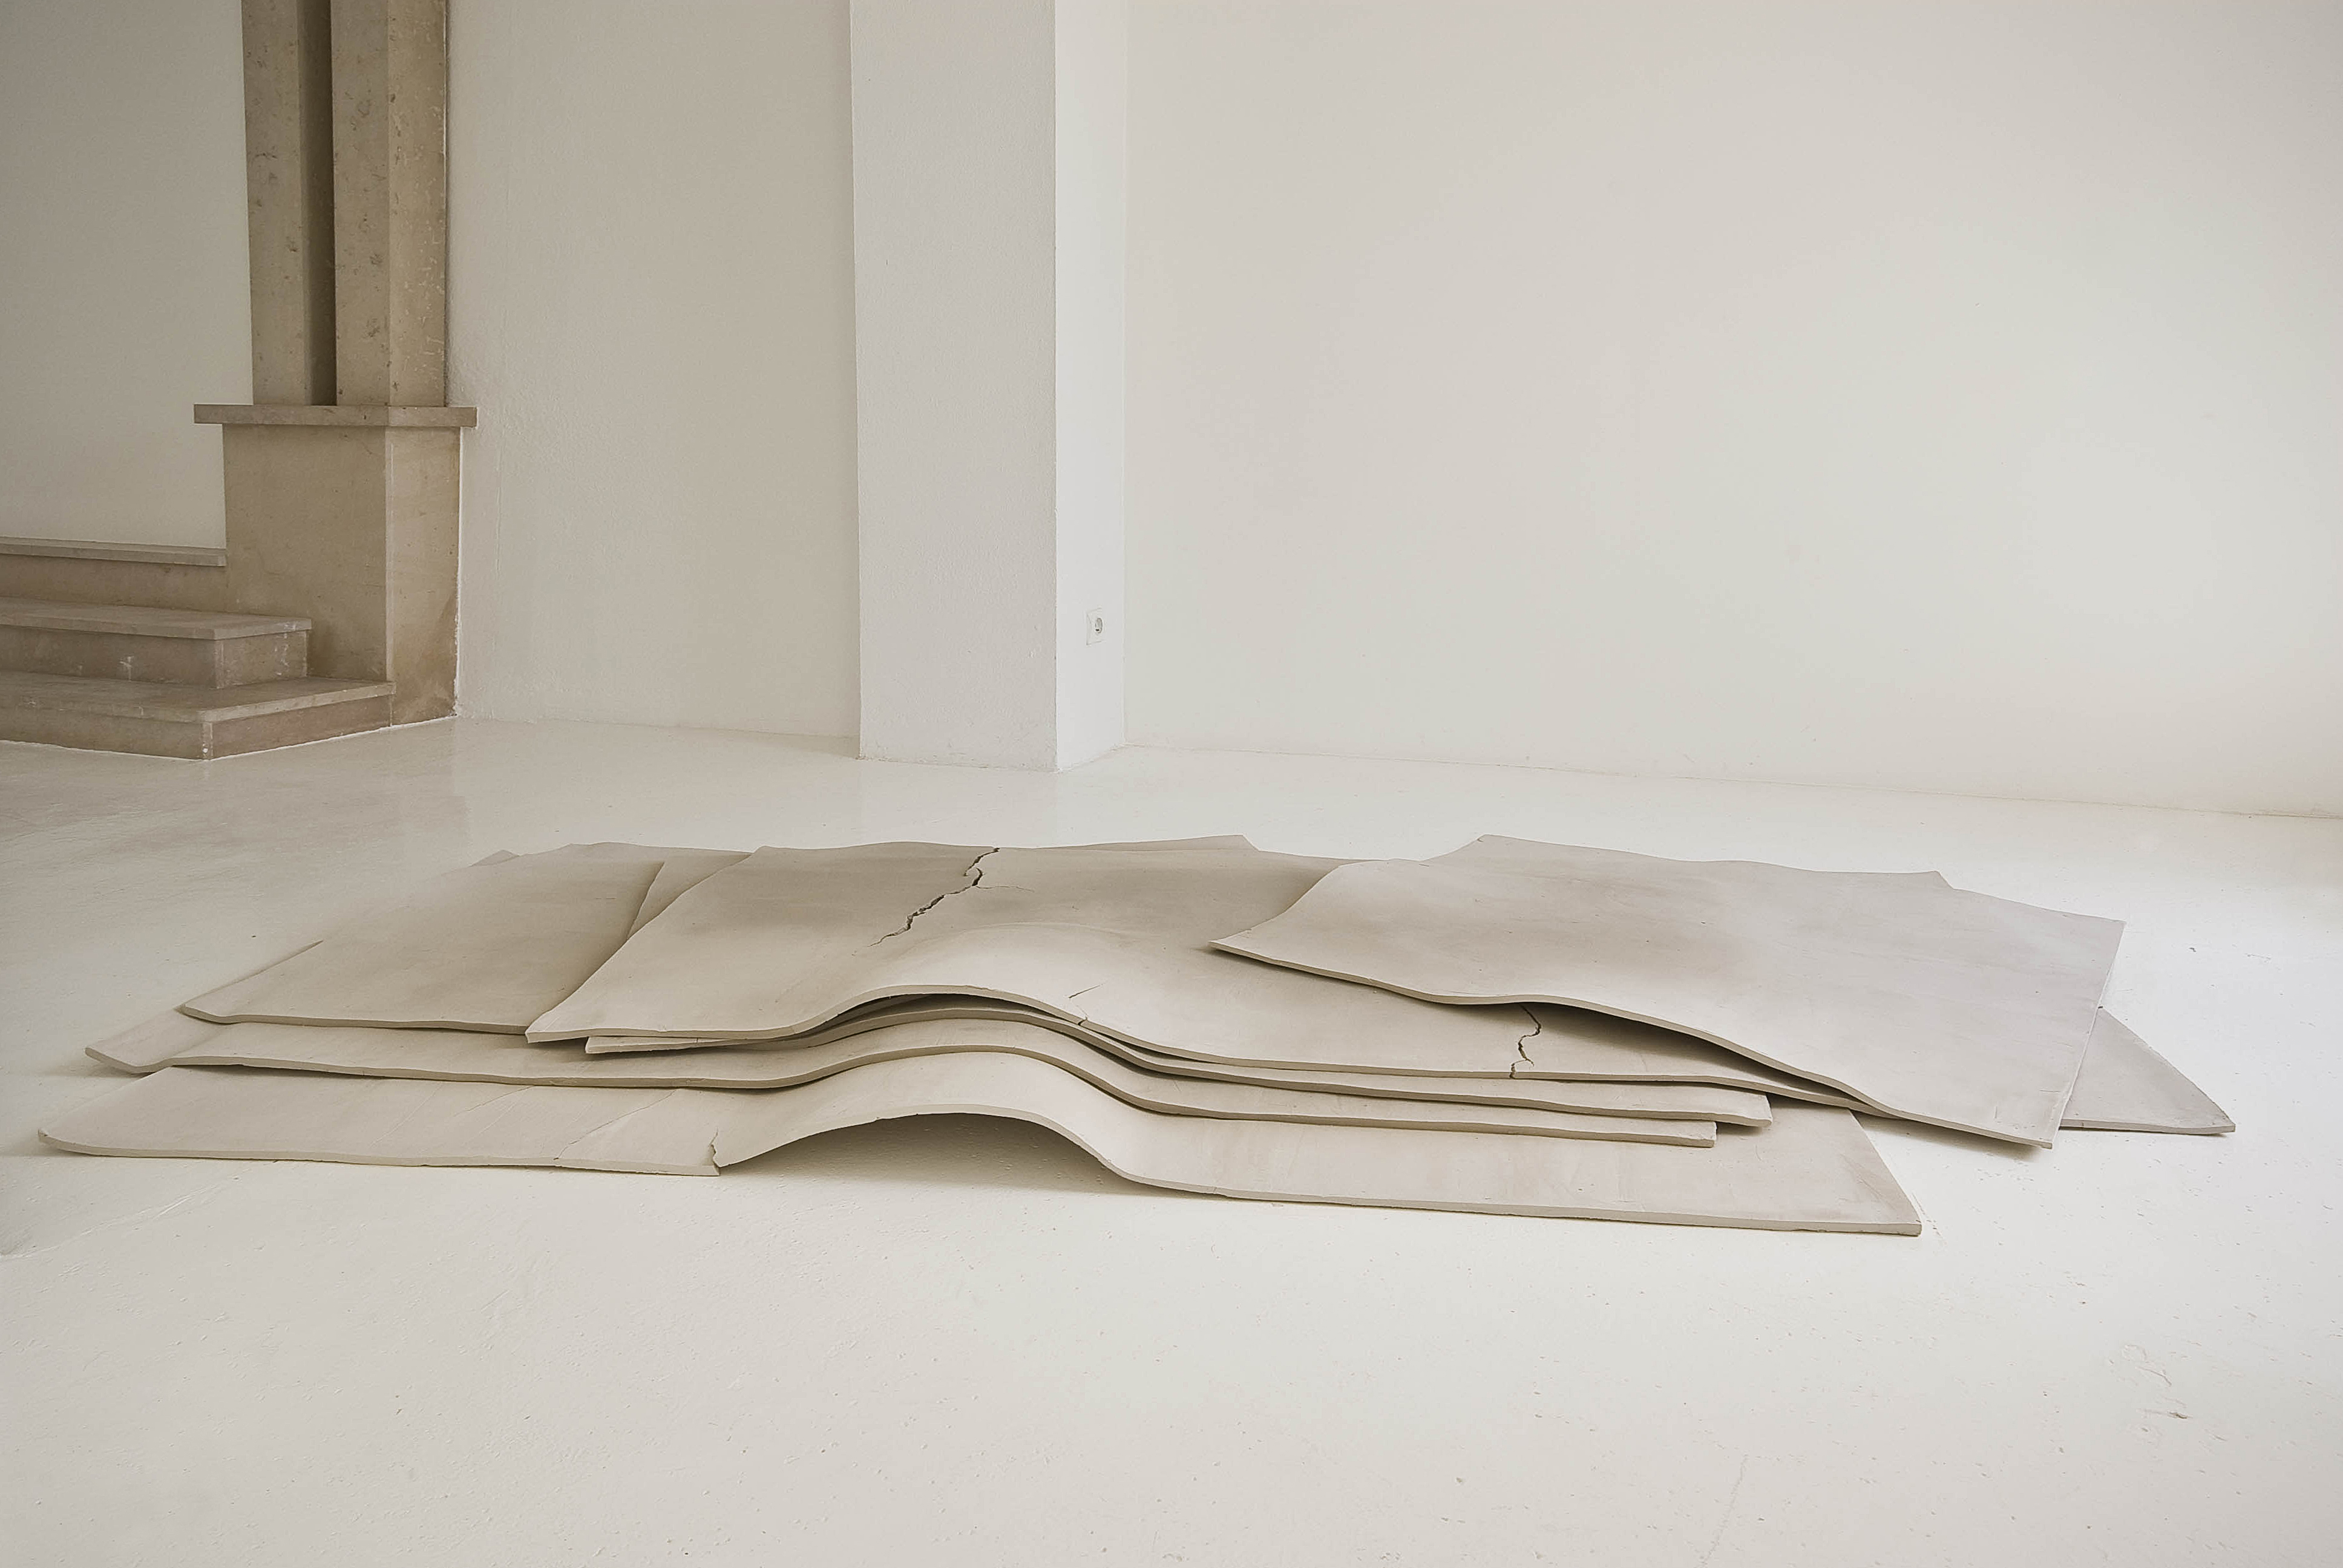 Sechs Flächen und ein Raum, 2008. Argile. 280 x 160 cm Courtesy Galerie Jocelyn Wolff et Katinka Bock. Photo Olivier Dancy